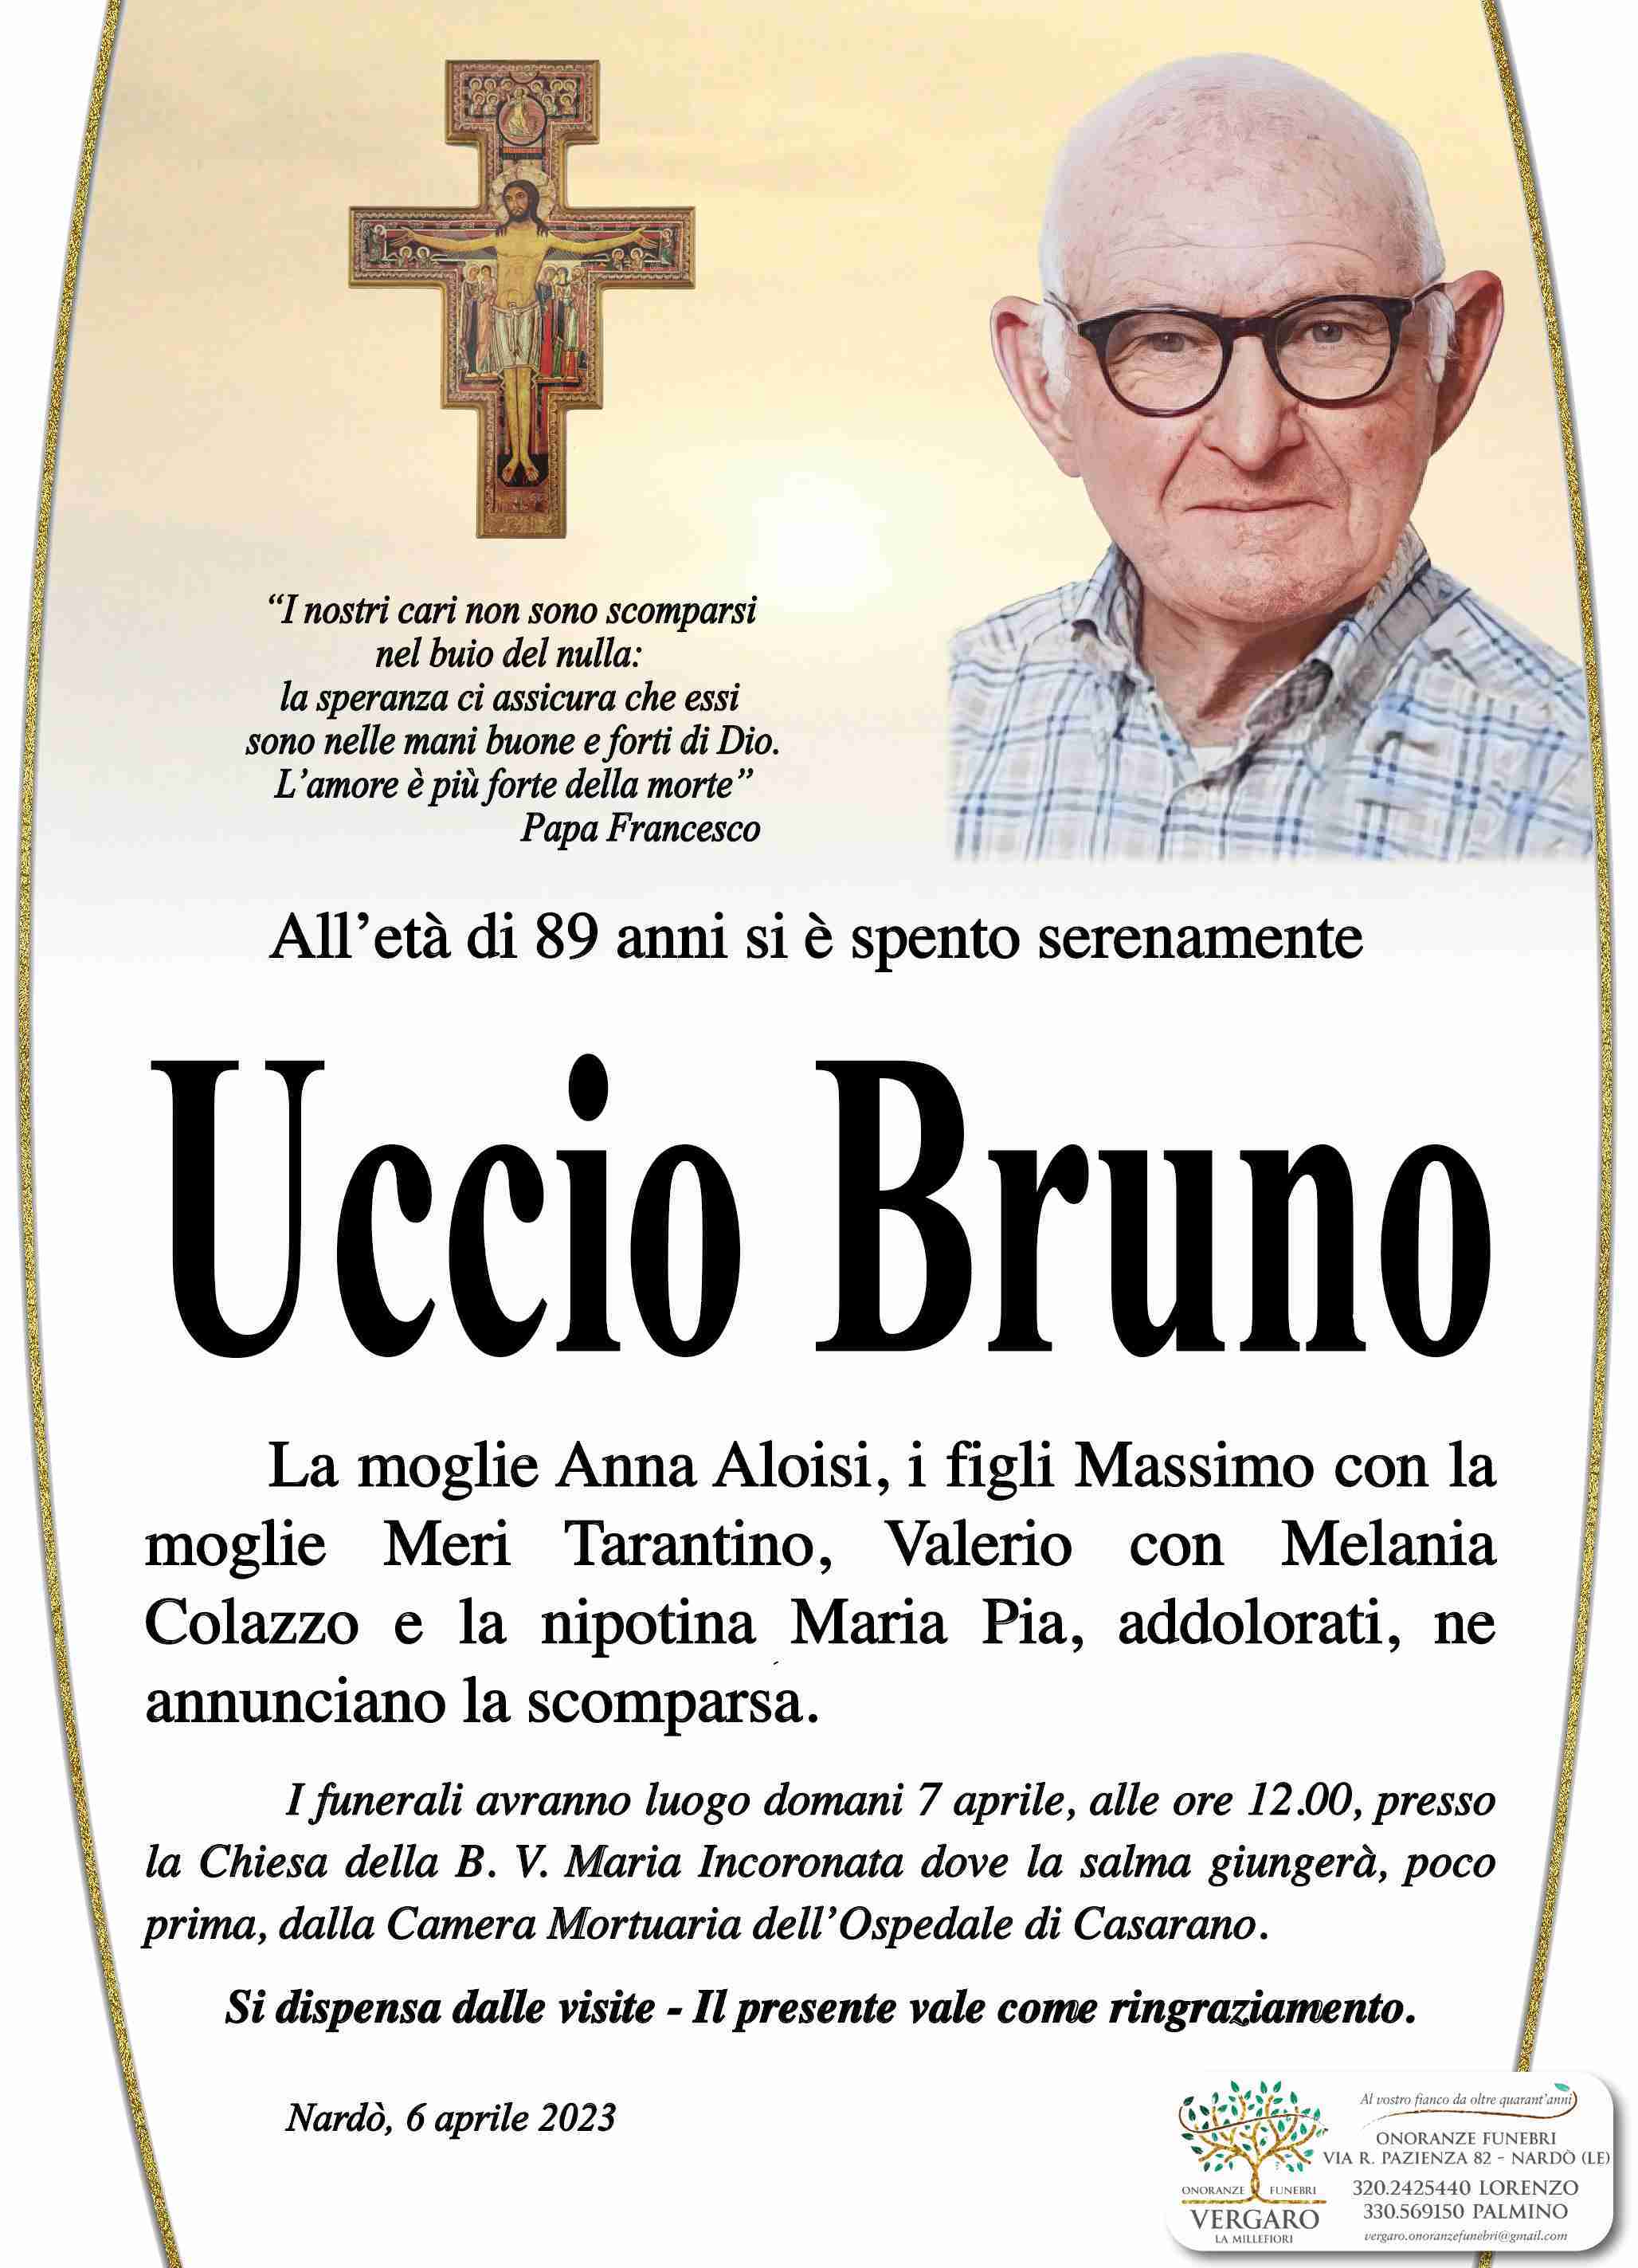 Vito Bruno